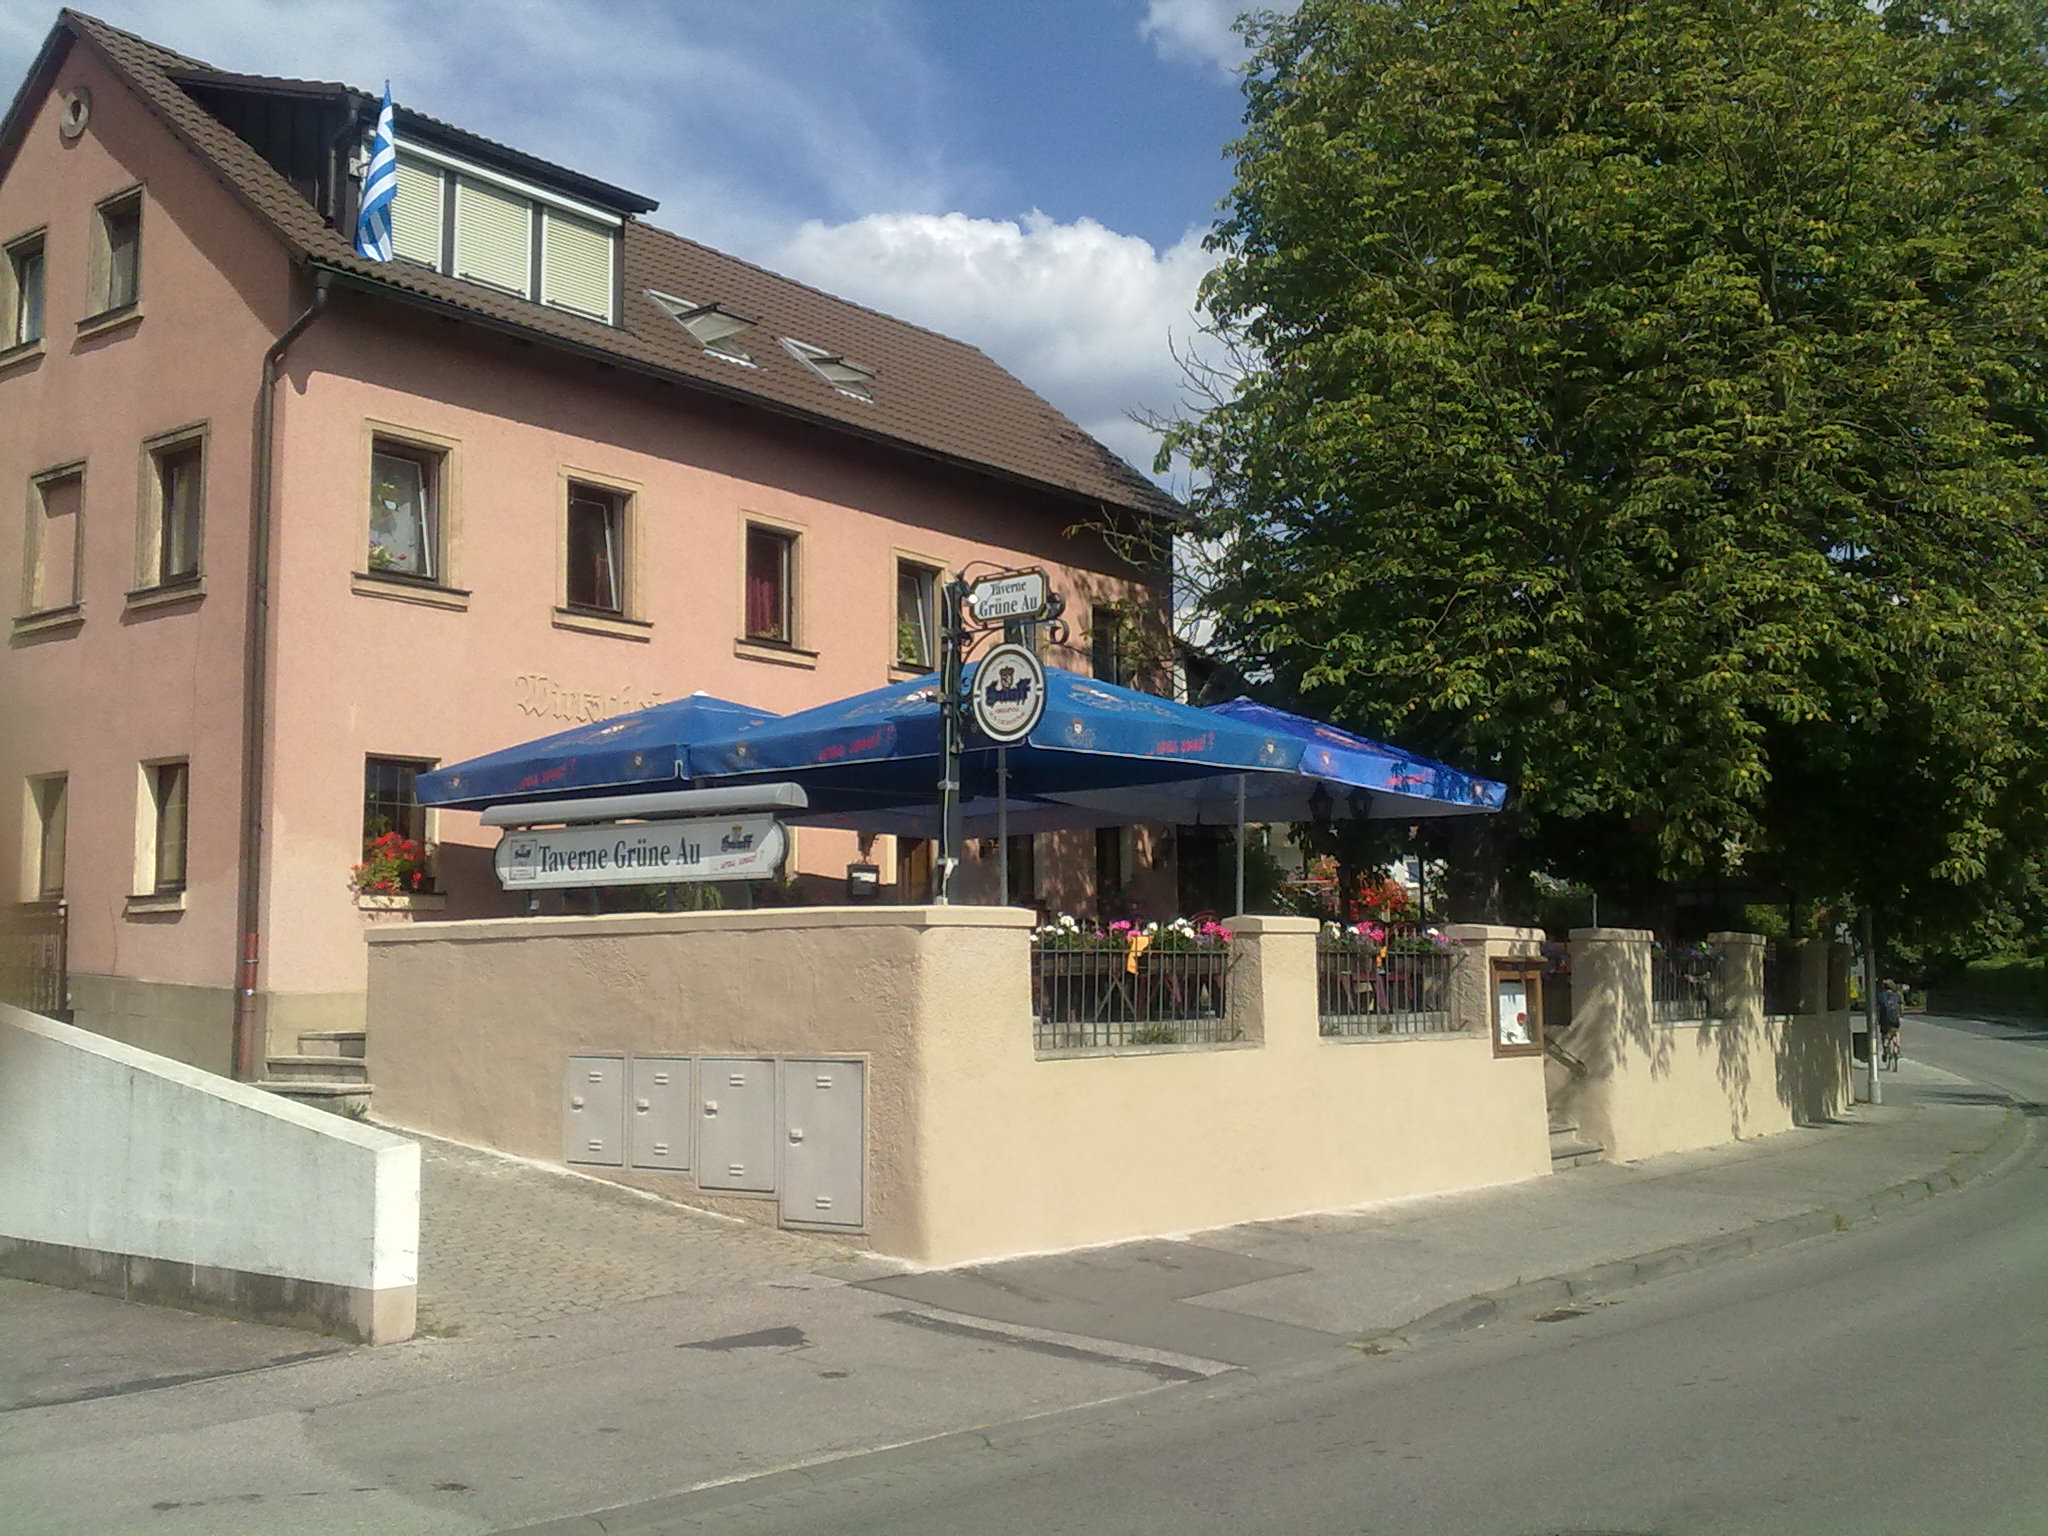 Taverne "Grüne Au" in Ansbach-Eyb